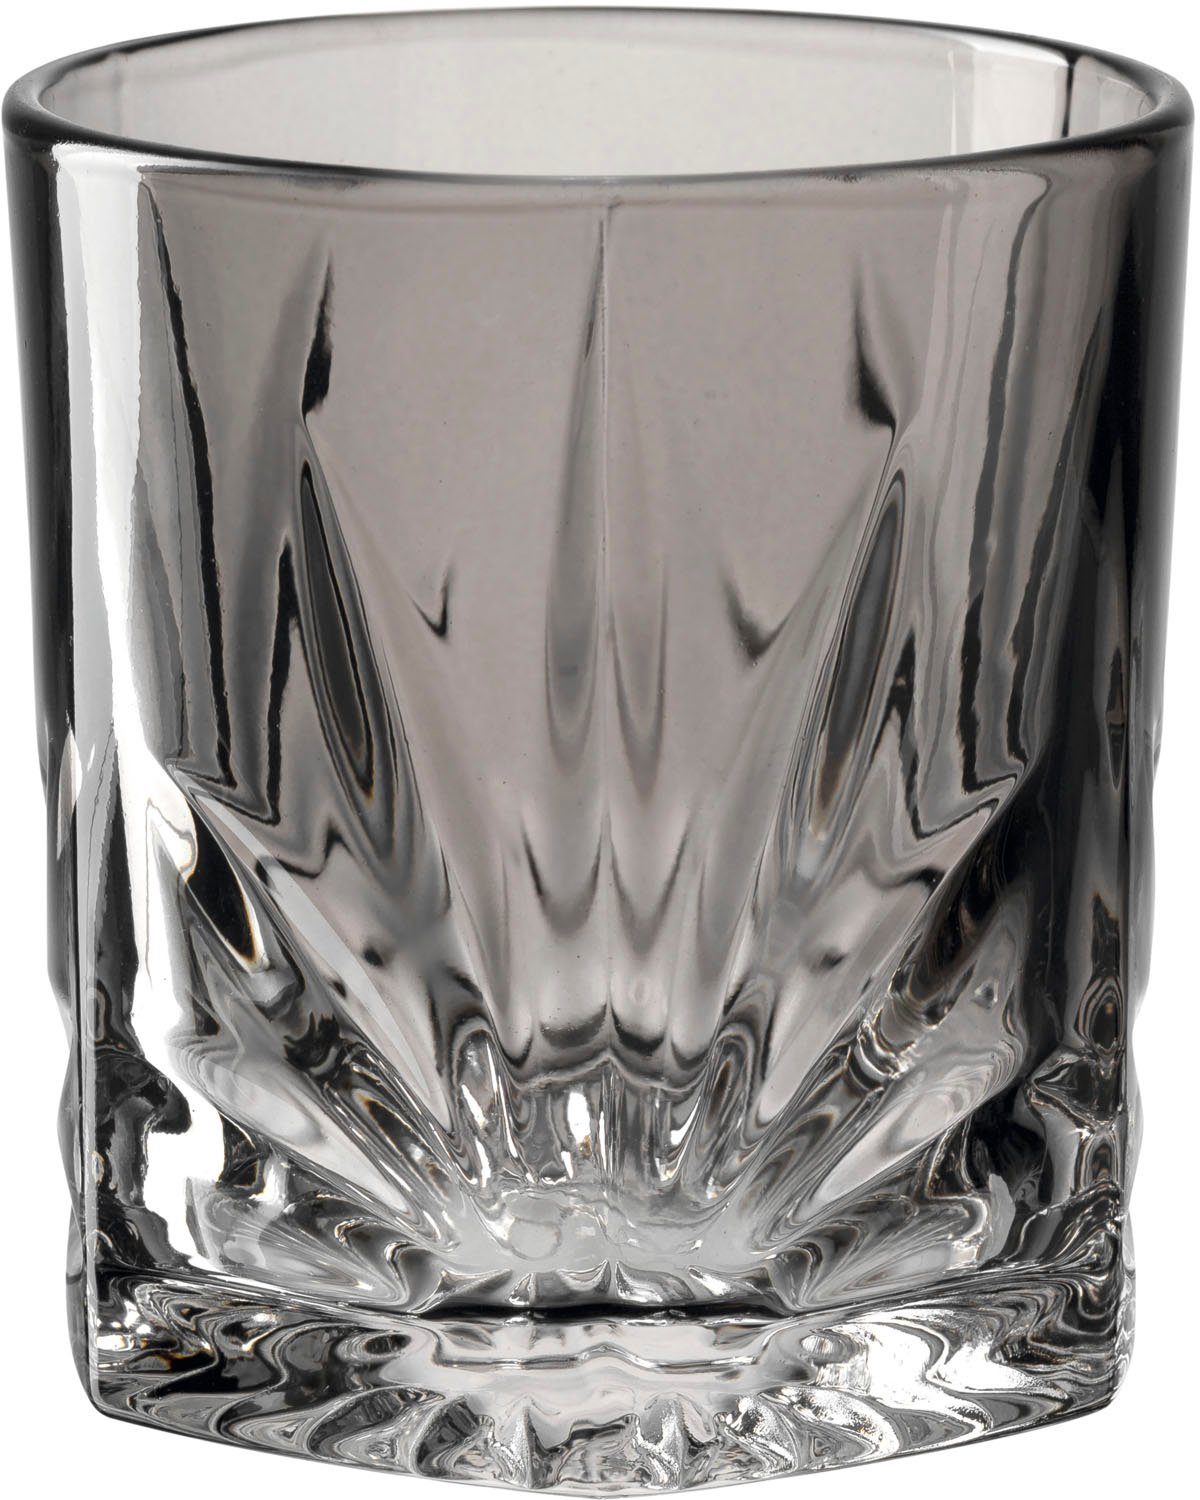 LEONARDO Gläser-Set CAPRI, Glas, 330 ml, 4-teilig